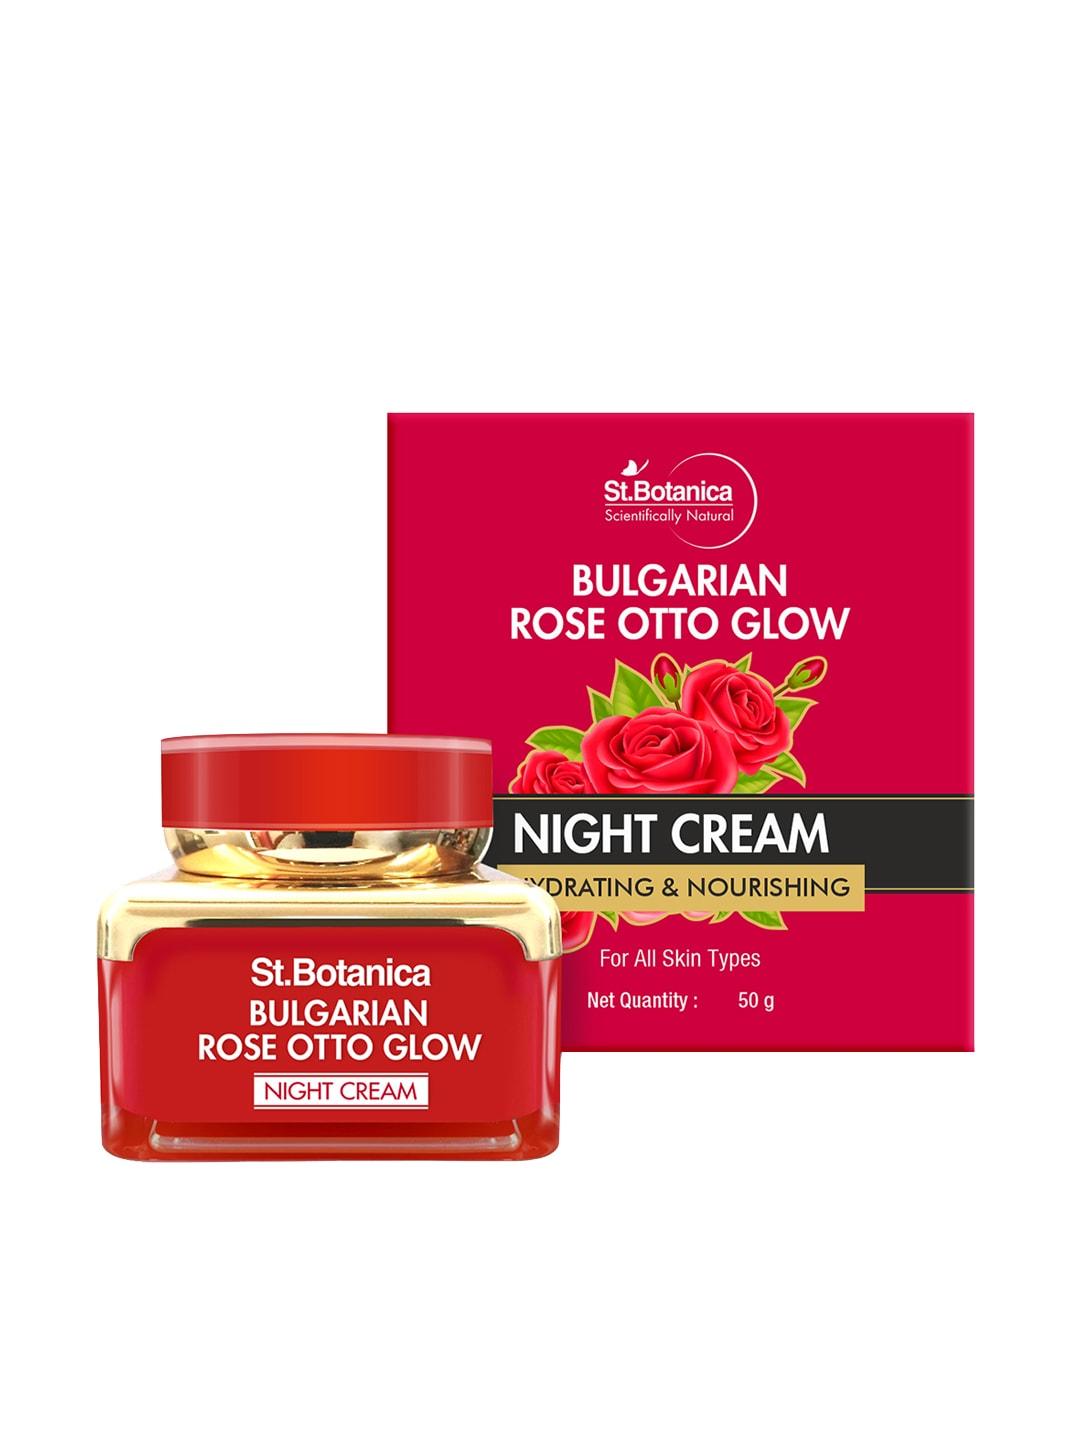 StBotanica Bulgarian Rose Otto Glow Night Cream Brightening, Hydrating & Nourishing - 50g